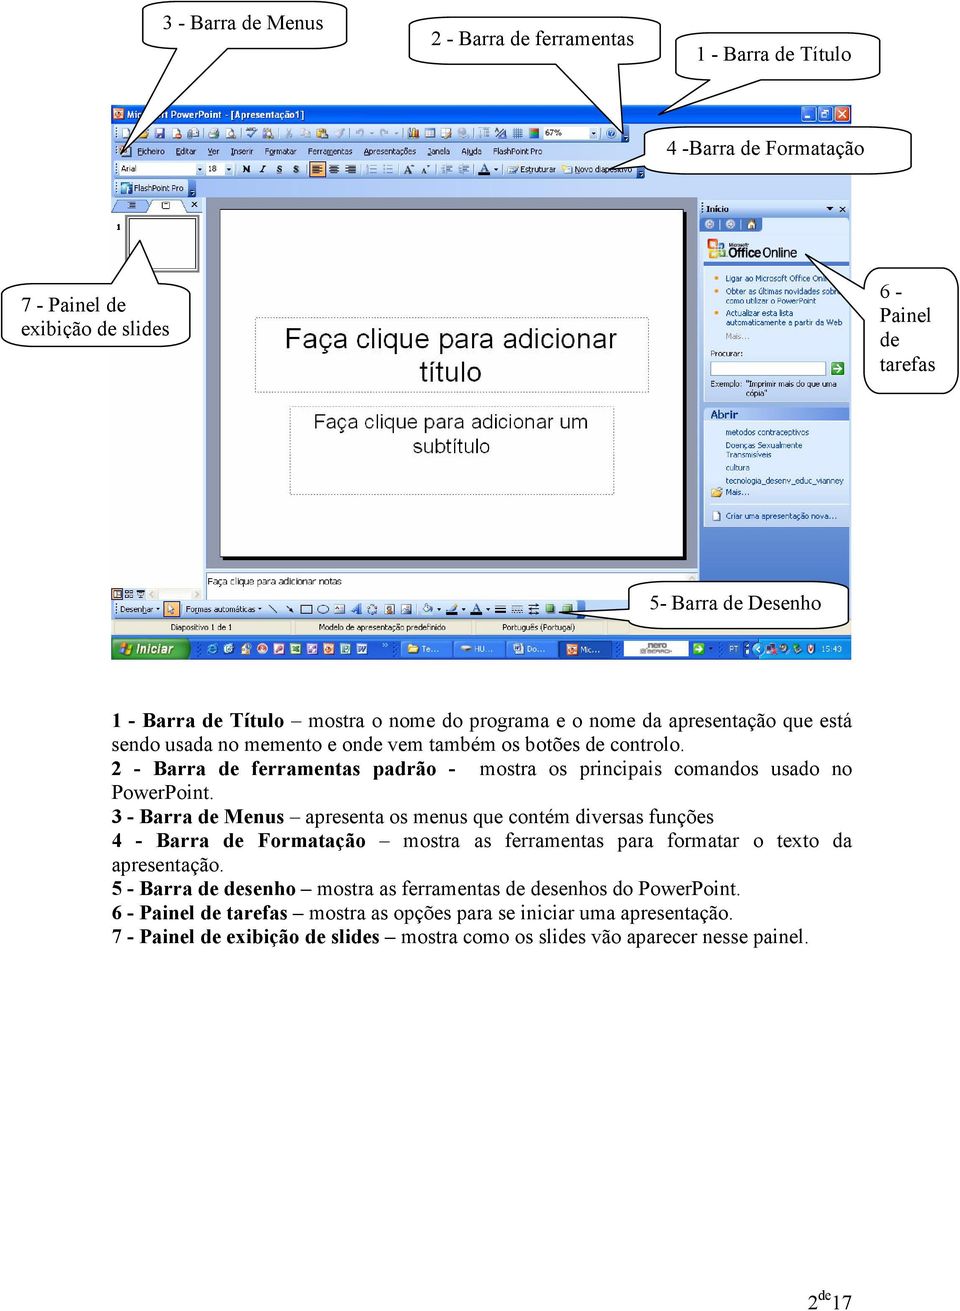 2 - Barra de ferramentas padrão - mostra os principais comandos usado no PowerPoint.